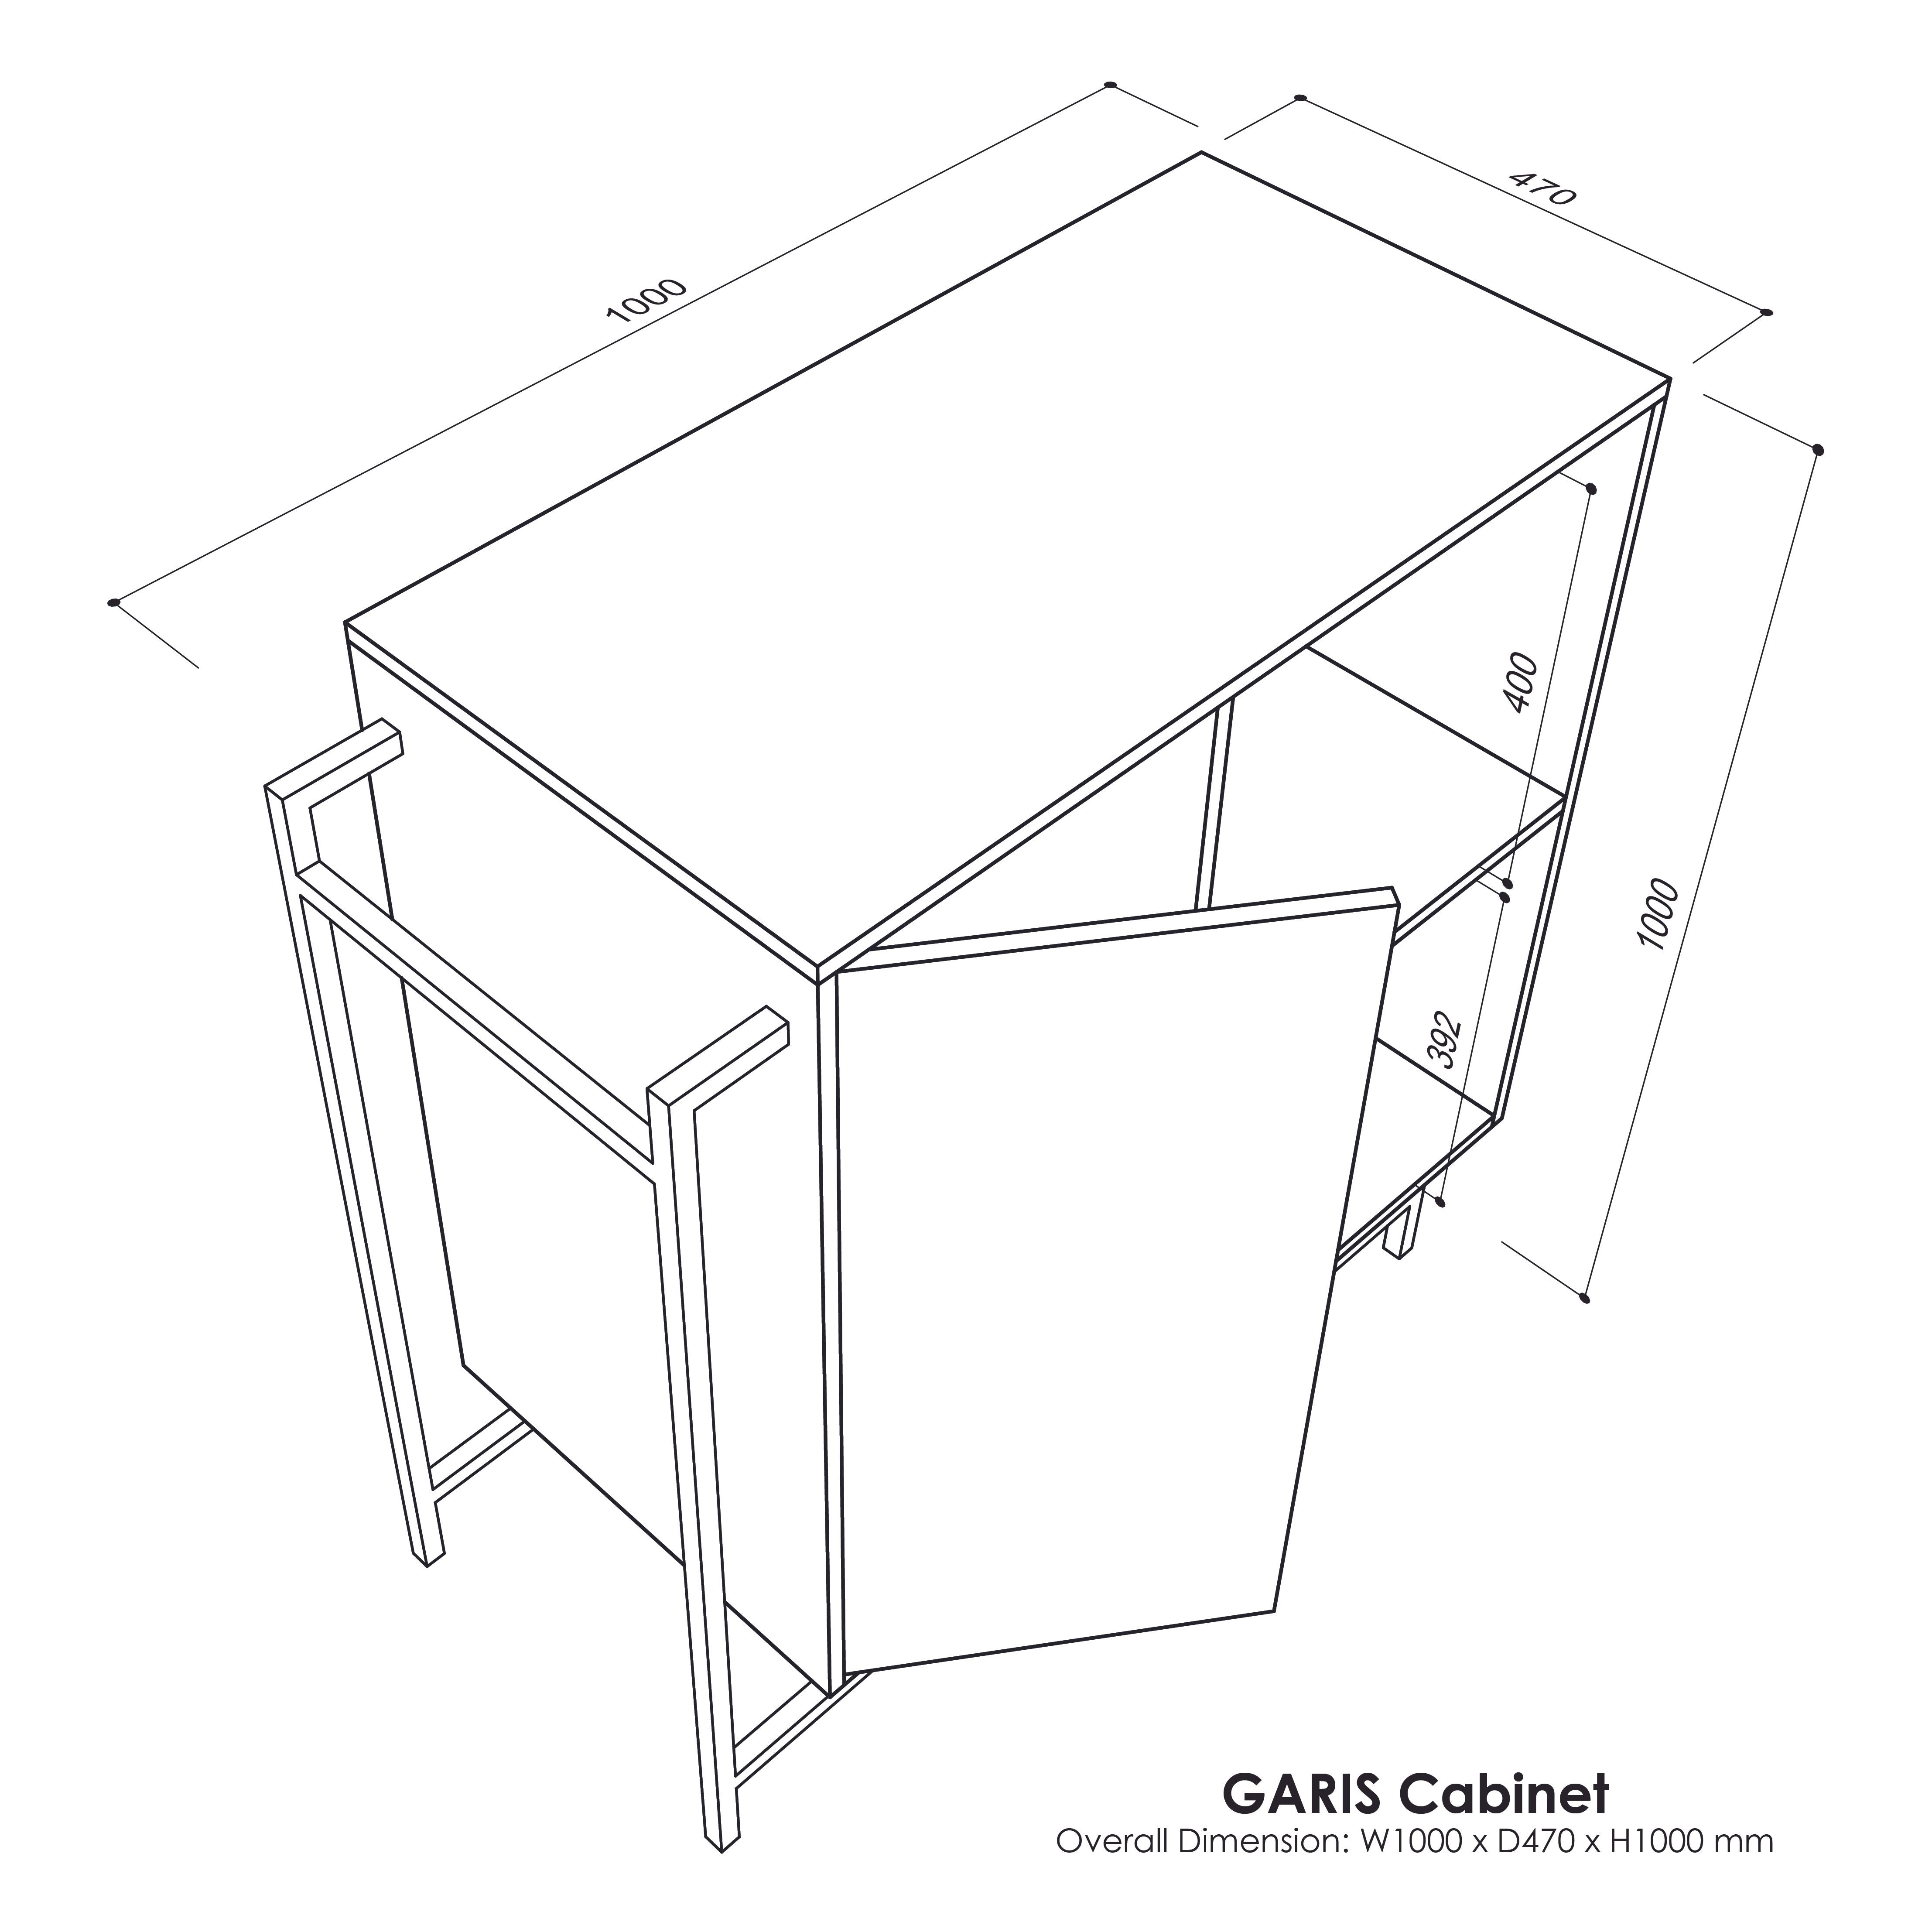 GARIS Cabinet V2.0